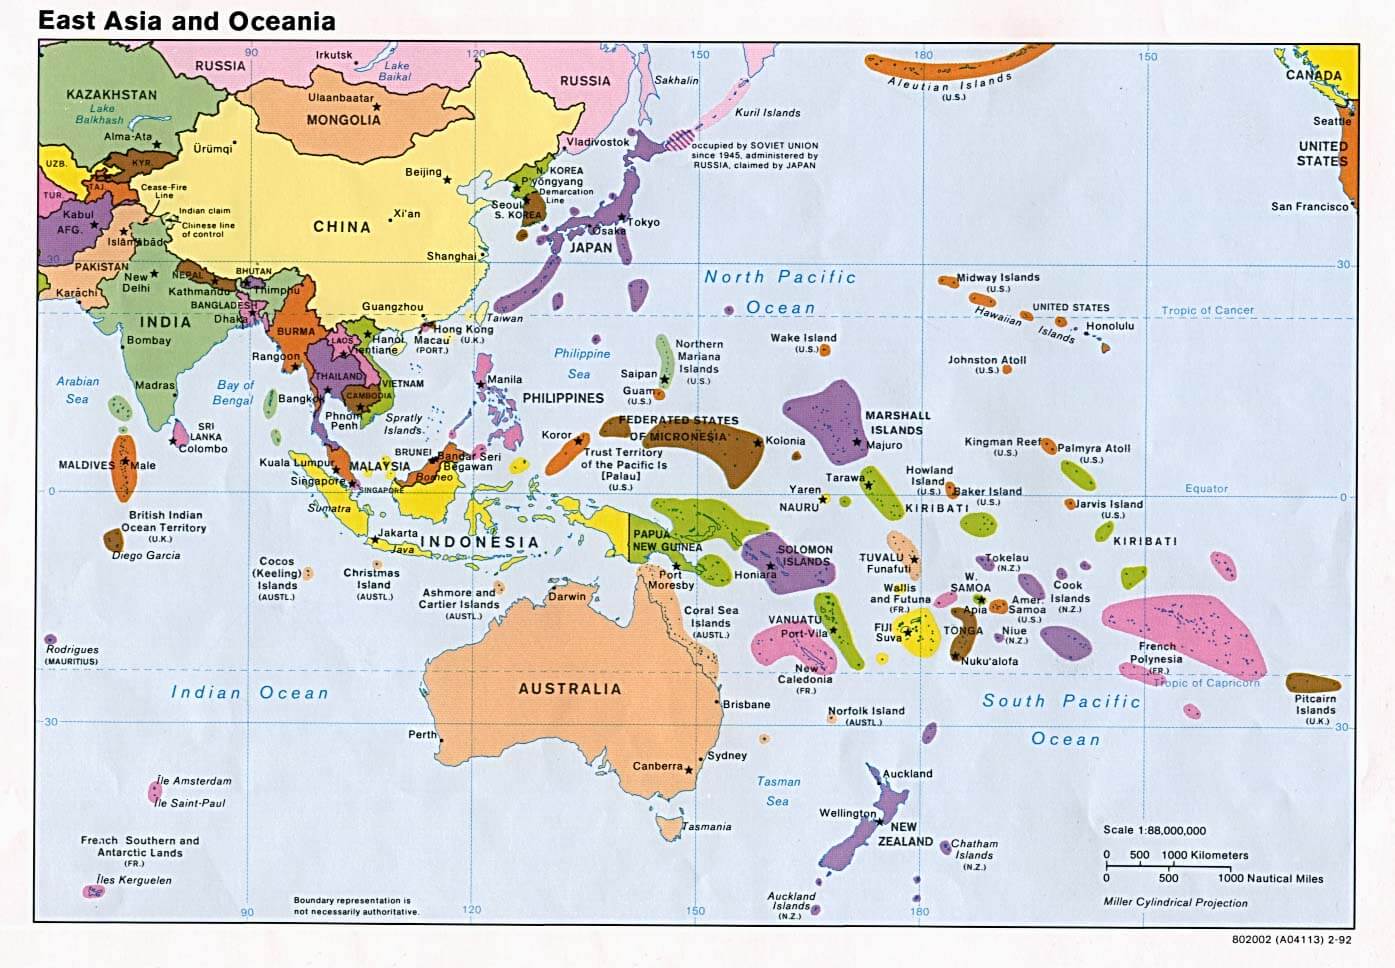 osten asien ozeanien politisch 1992